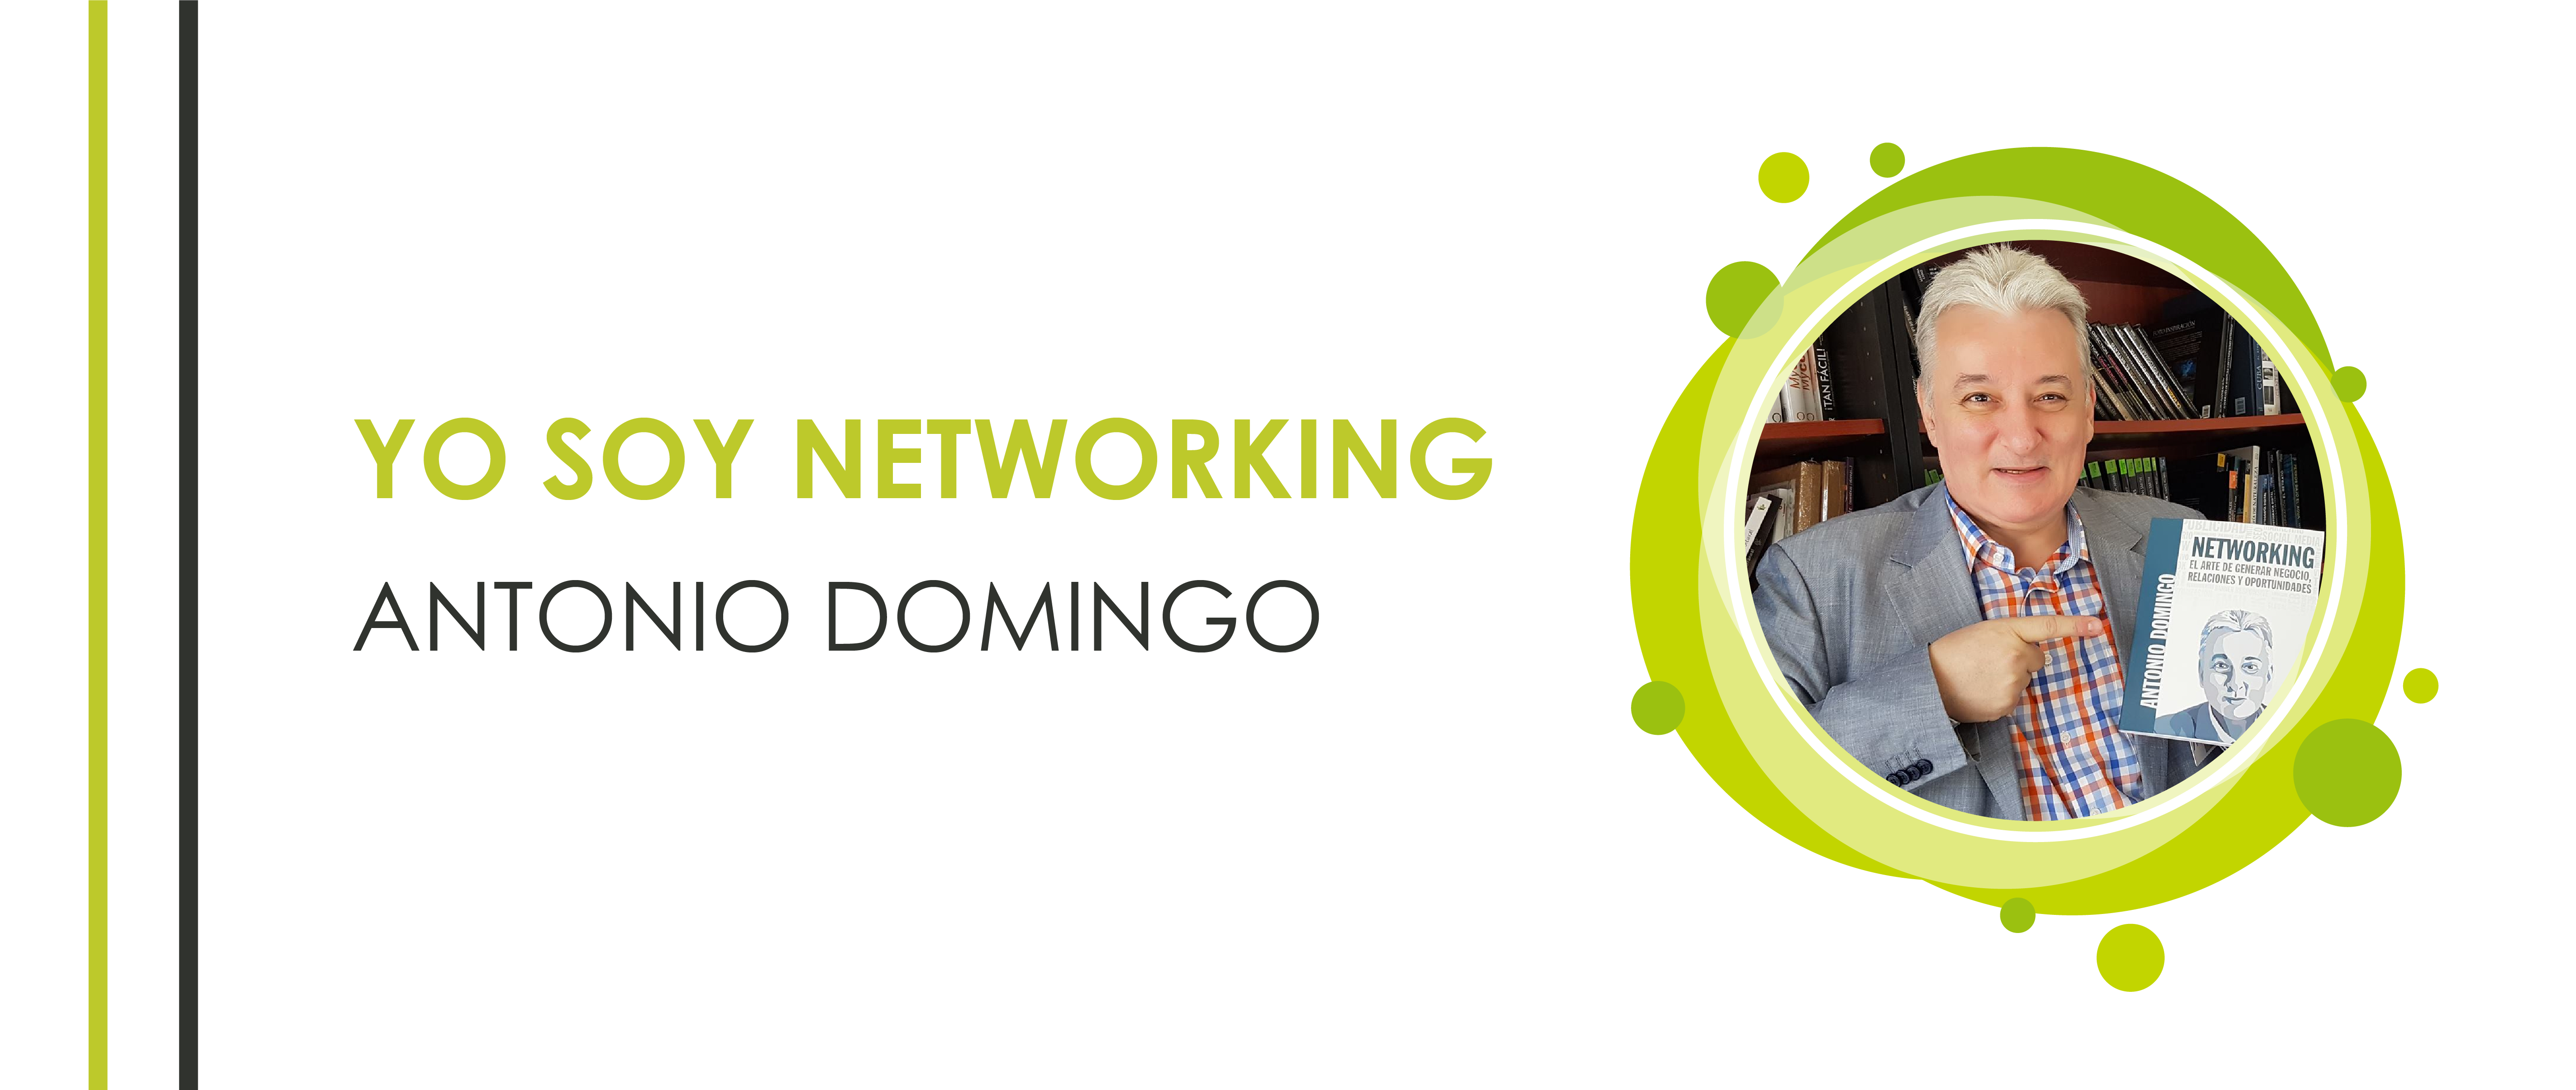 Entrevista a Antonio Domingo: “Yo no voy a hacer networking. Yo SOY networking”